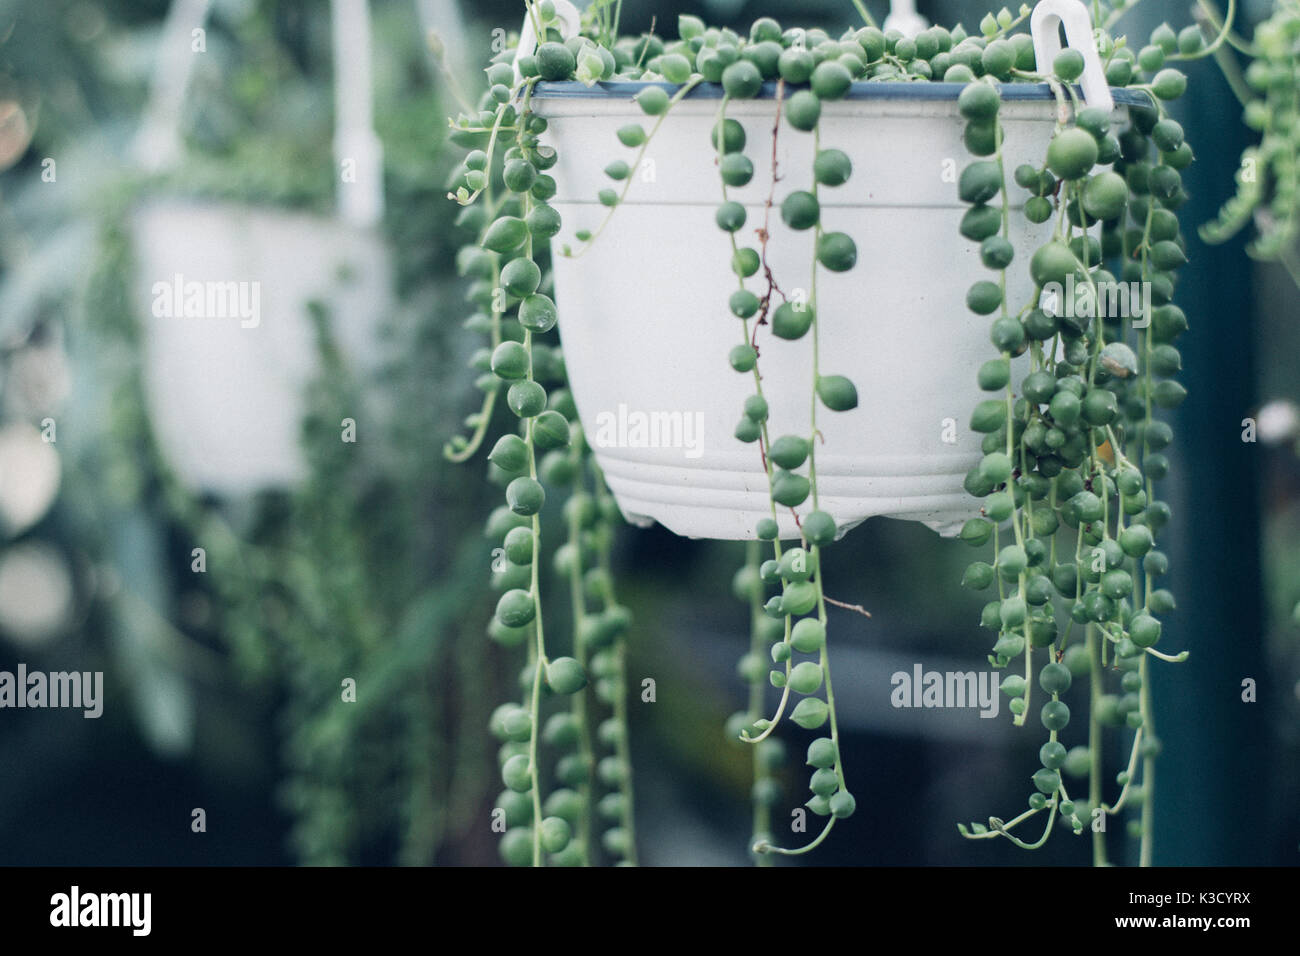 String of pearls plante succulente accroché dans une serre, symbolisant le calme et la sérénité avec des prix pour l'exemplaire Banque D'Images